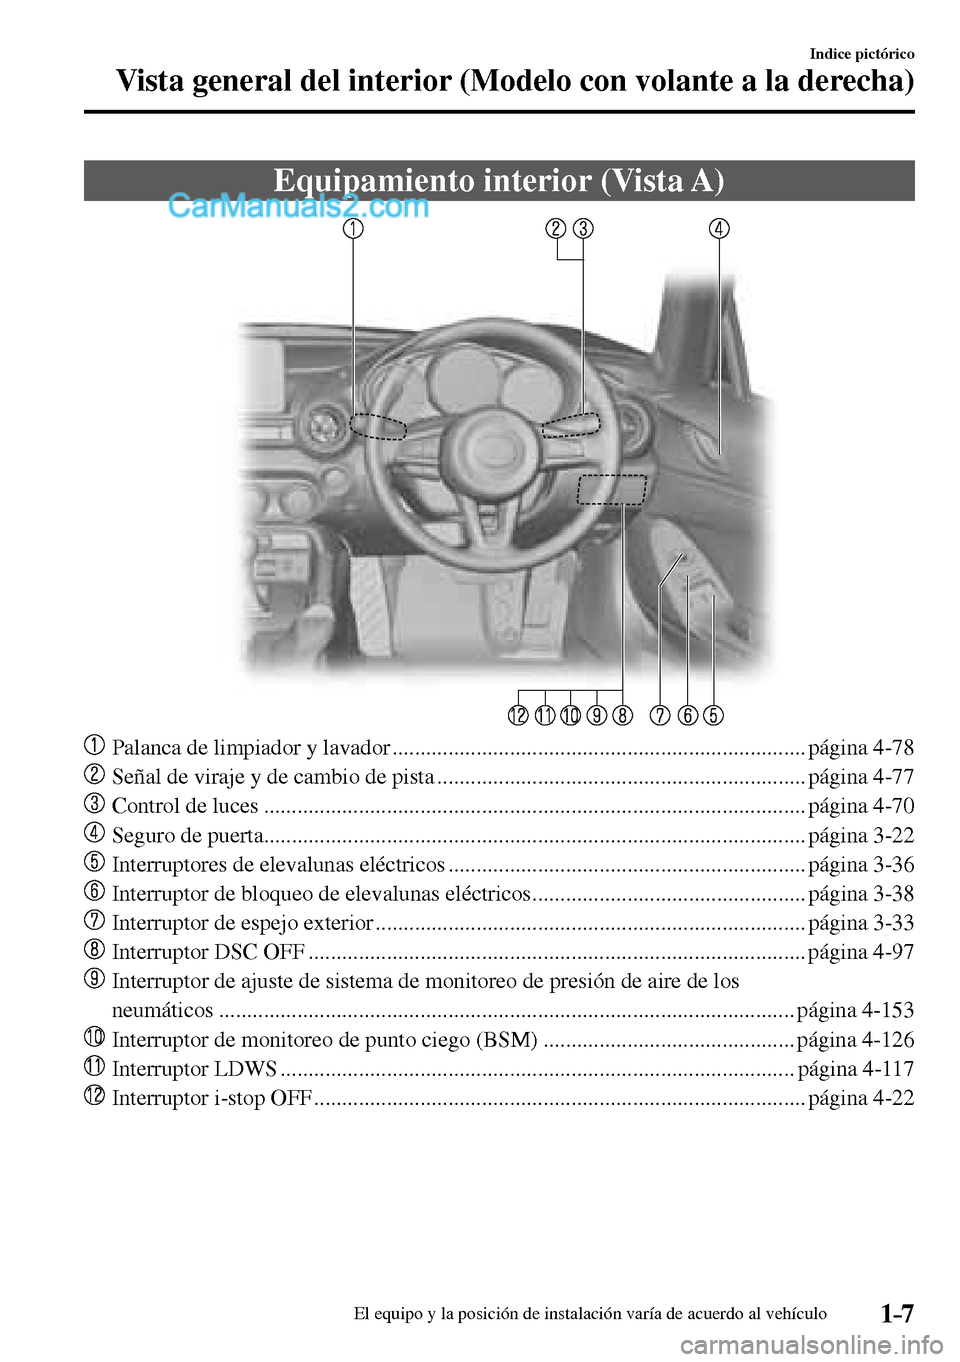 MAZDA MODEL MX-5 RF 2017  Manual del propietario (in Spanish) 1–7
Indice pictórico
Vista general del interior (Modelo con volante a la derecha)
      Equipamiento  interior  (Vista  A)
     Palanca de limpiador y lavador ......................................